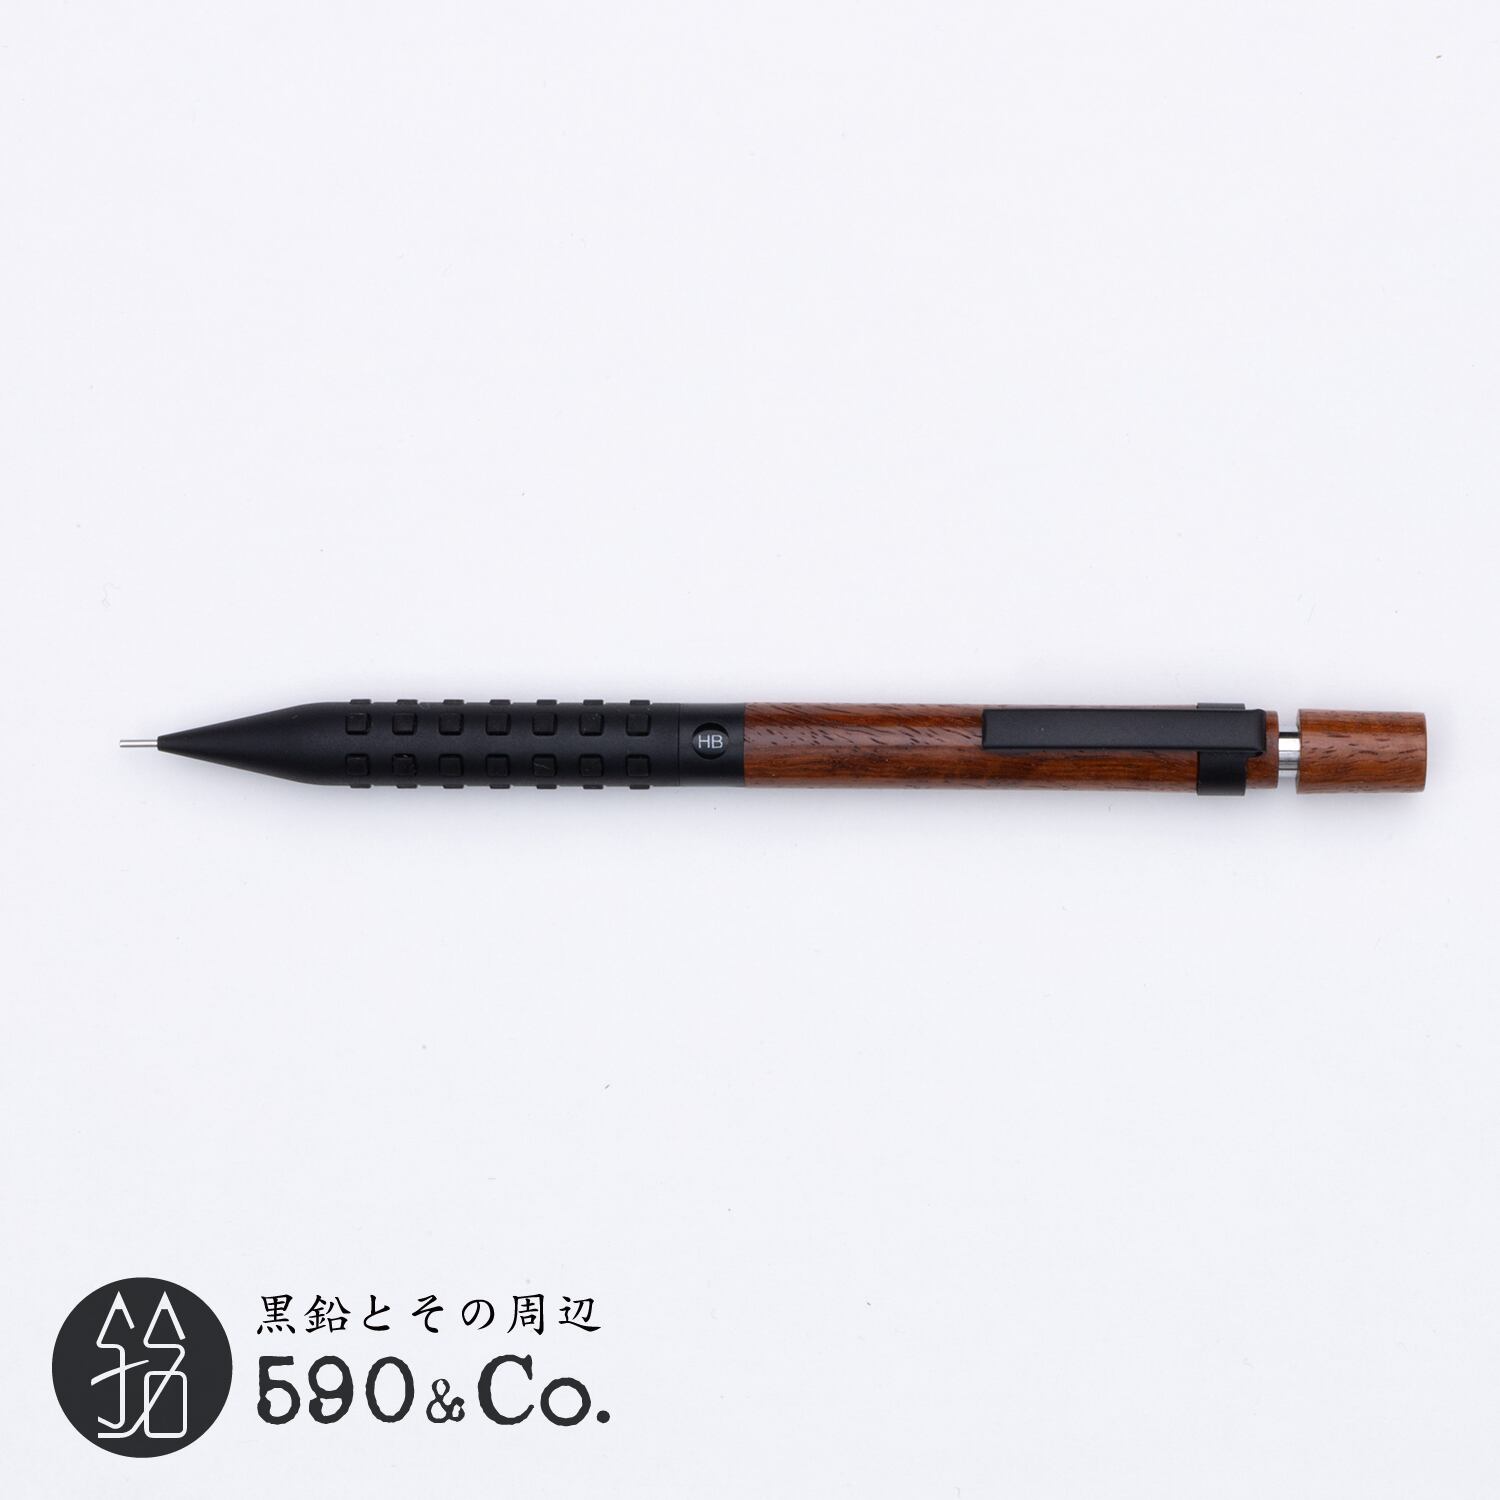 ALINA penmaker】鉛筆補助軸・丸型 (クルミ) | 590&Co.